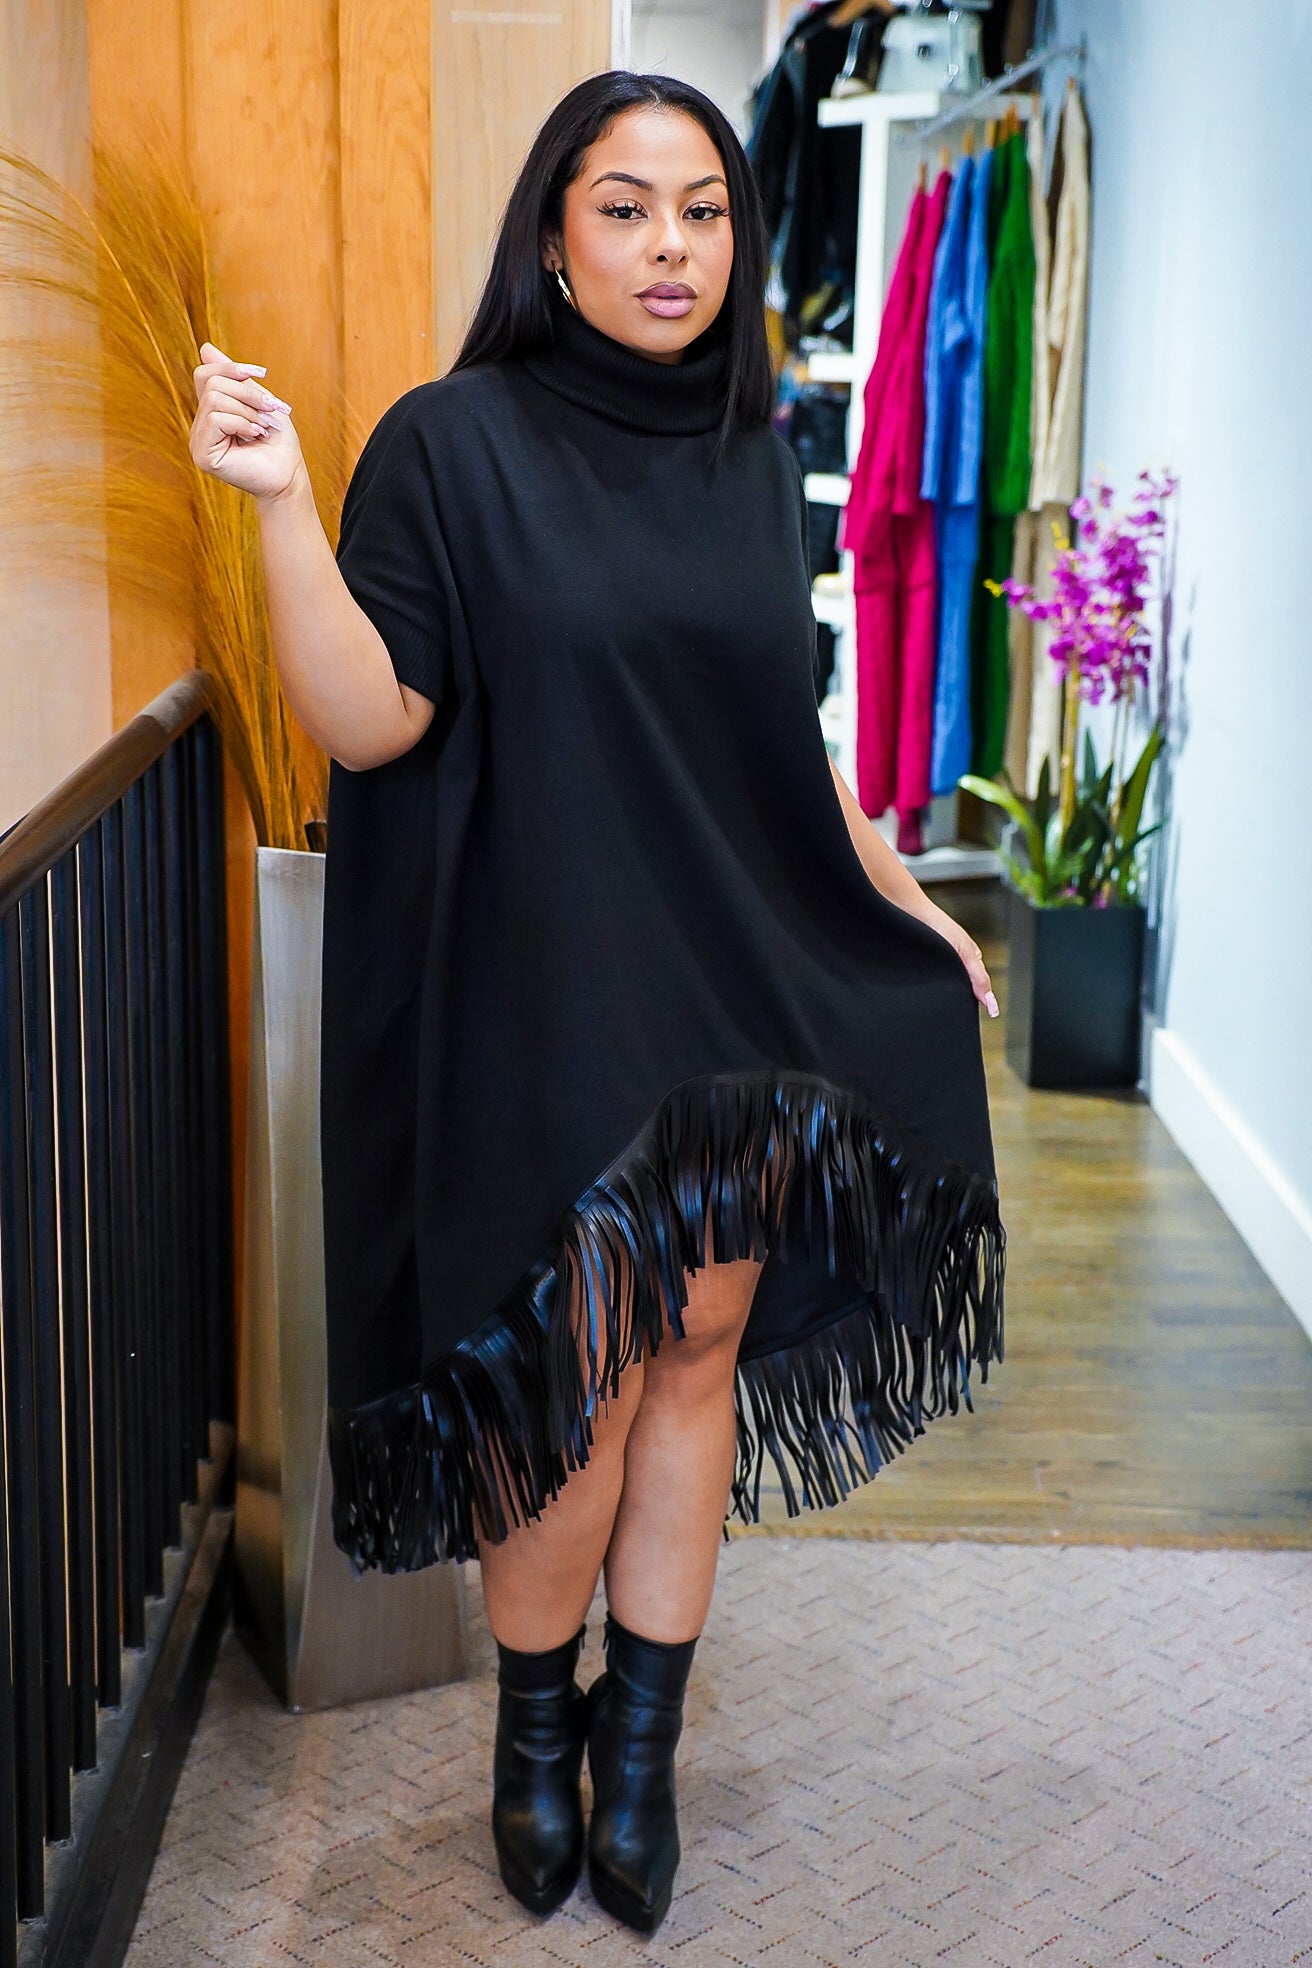 Plus Size Black Fringe Faux Leather Pants - Fabulously Dressed Boutique –  Fabulously Dressed Boutique